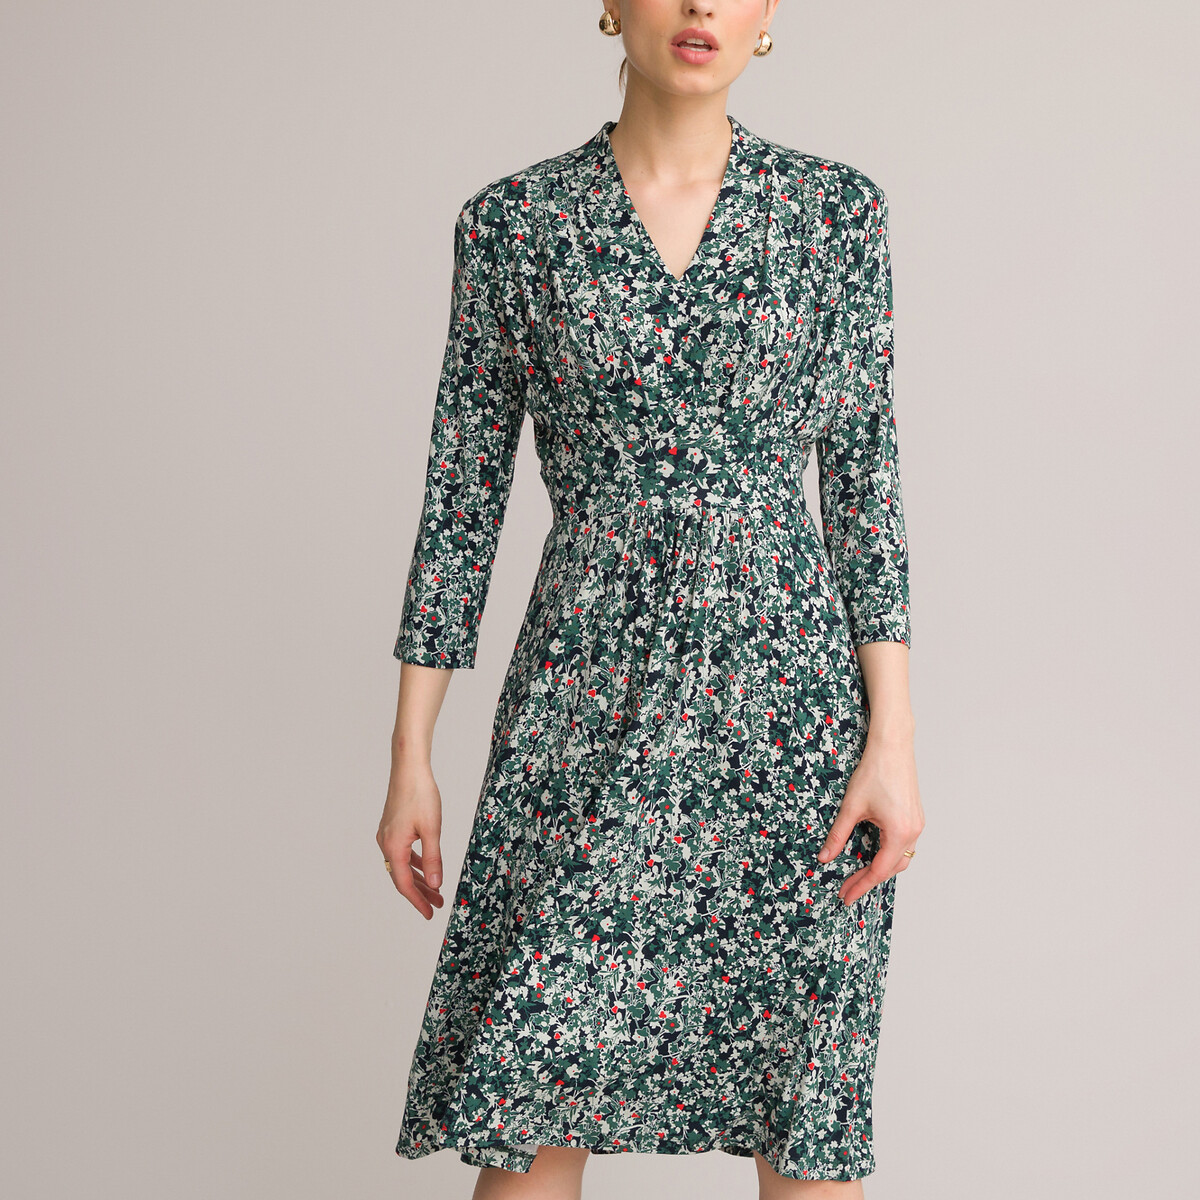 Платье-миди ANNE WEYBURN Платье-миди Расклешенное с цветочным принтом 44 зеленый, размер 44 - фото 2